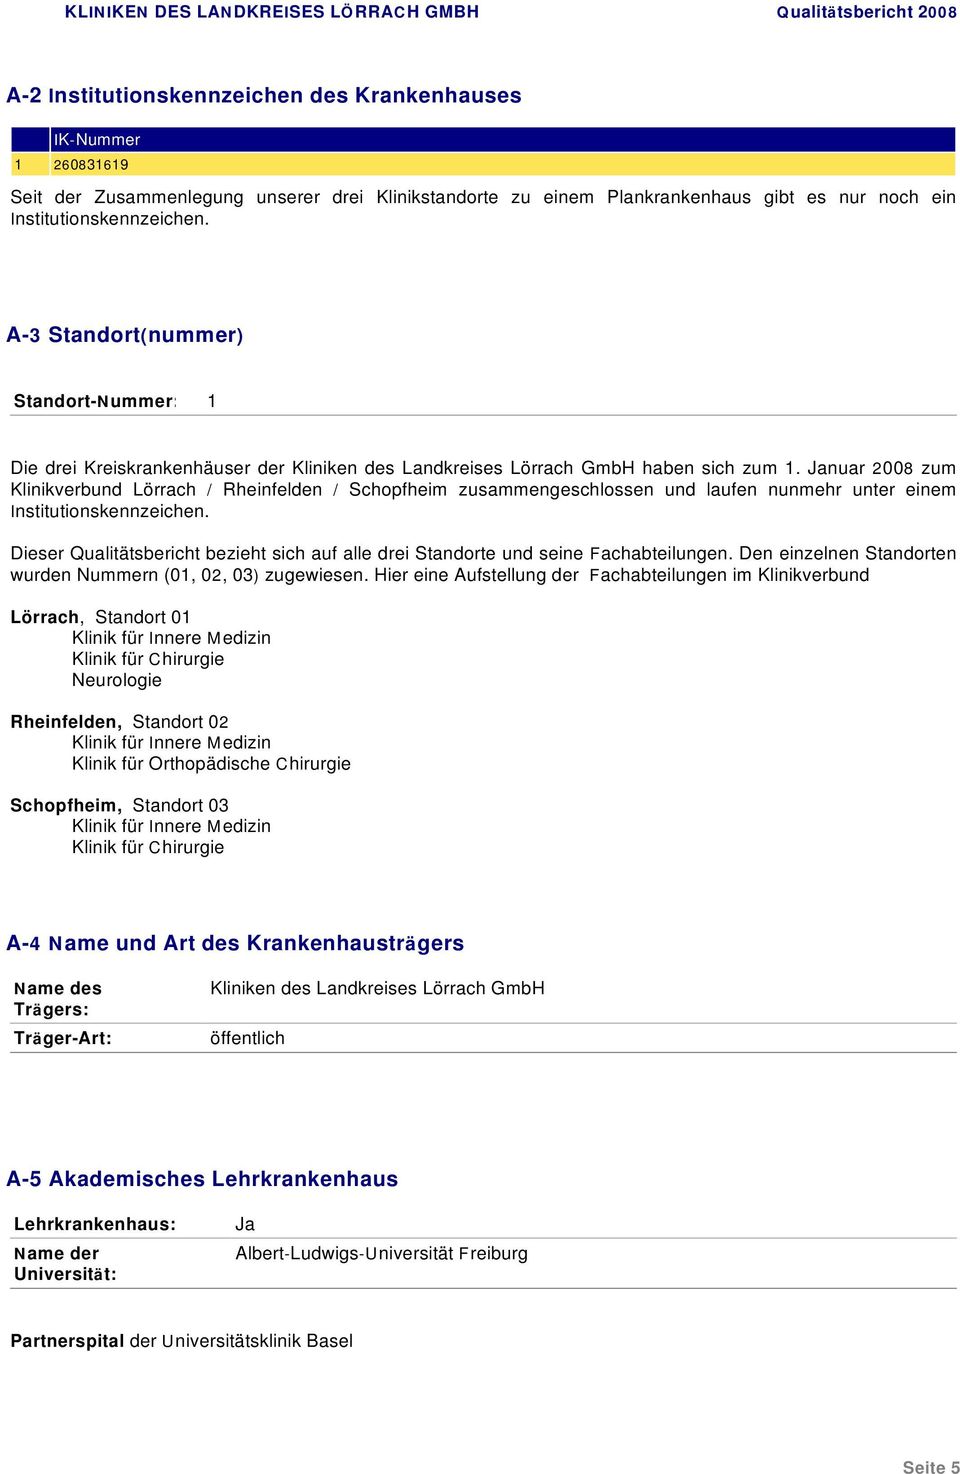 Januar 2008 zum Klinikverbund Lörrach / Rheinfelden / Schopfheim zusammengeschlossen und laufen nunmehr unter einem Institutionskennzeichen.